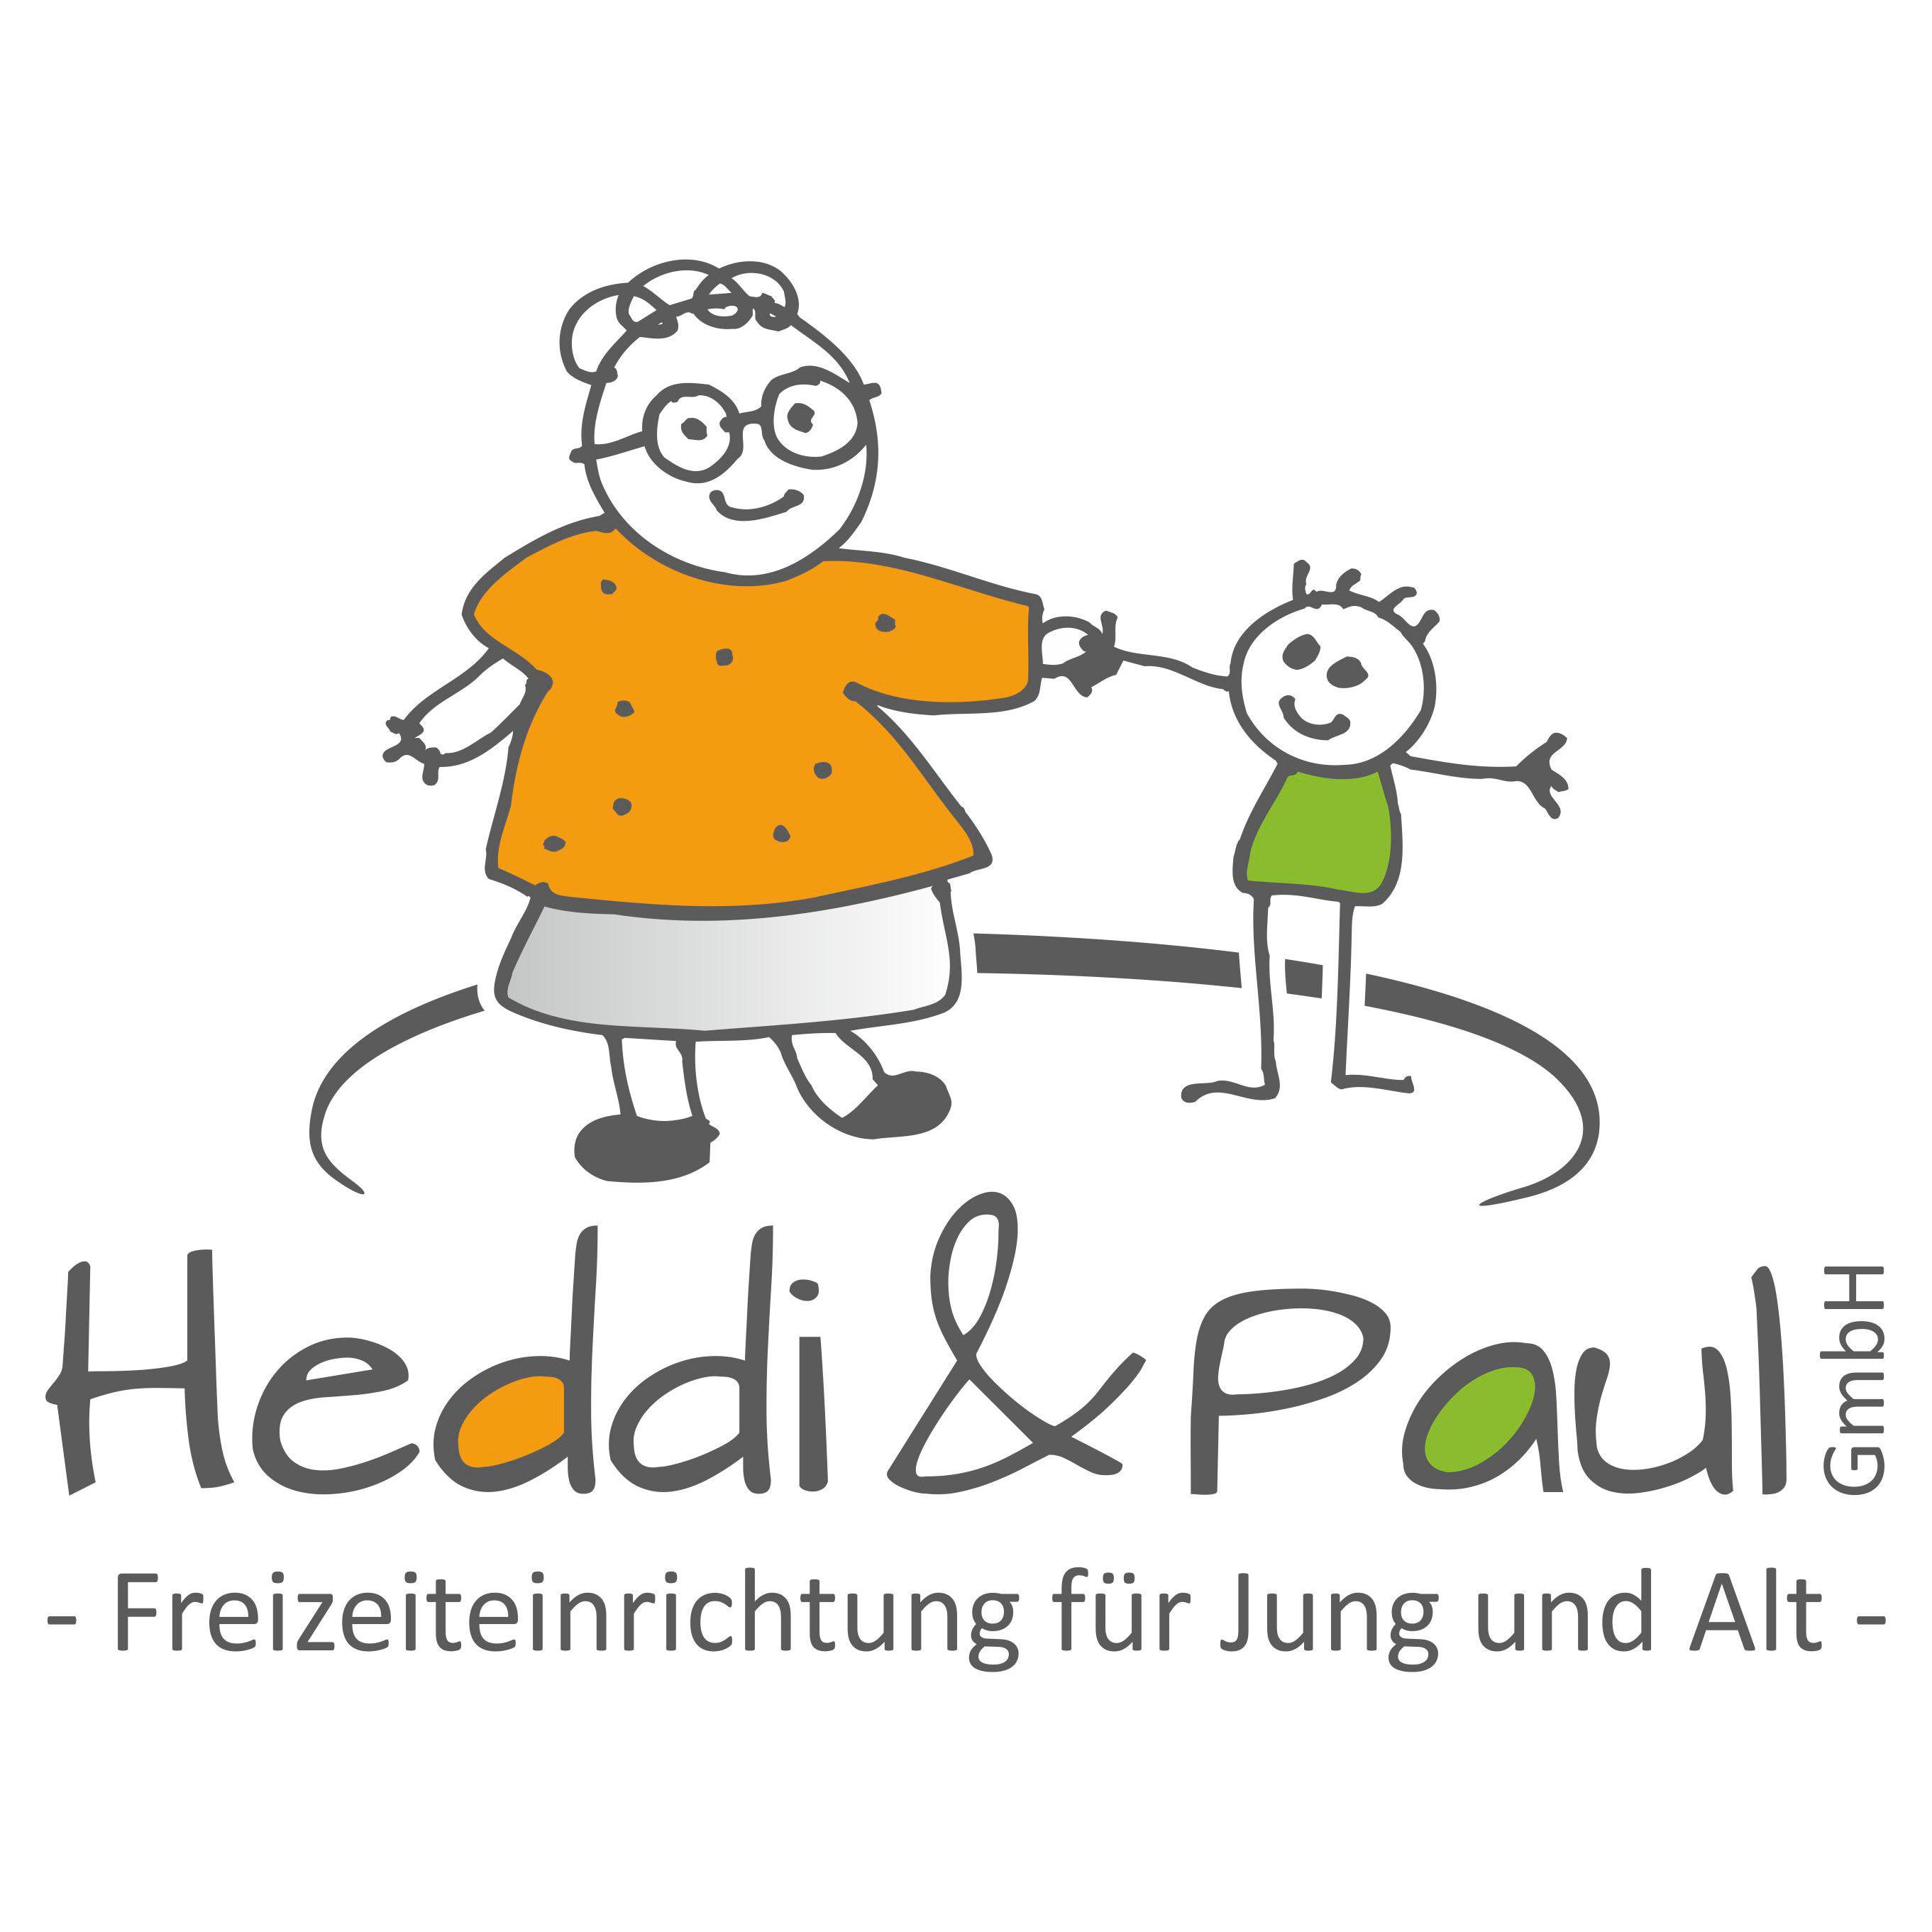 Heddi & Paul GmbH Freizeiteinrichtung für Jung und Alt in Weißenbrunn Kreis Kronach - Logo